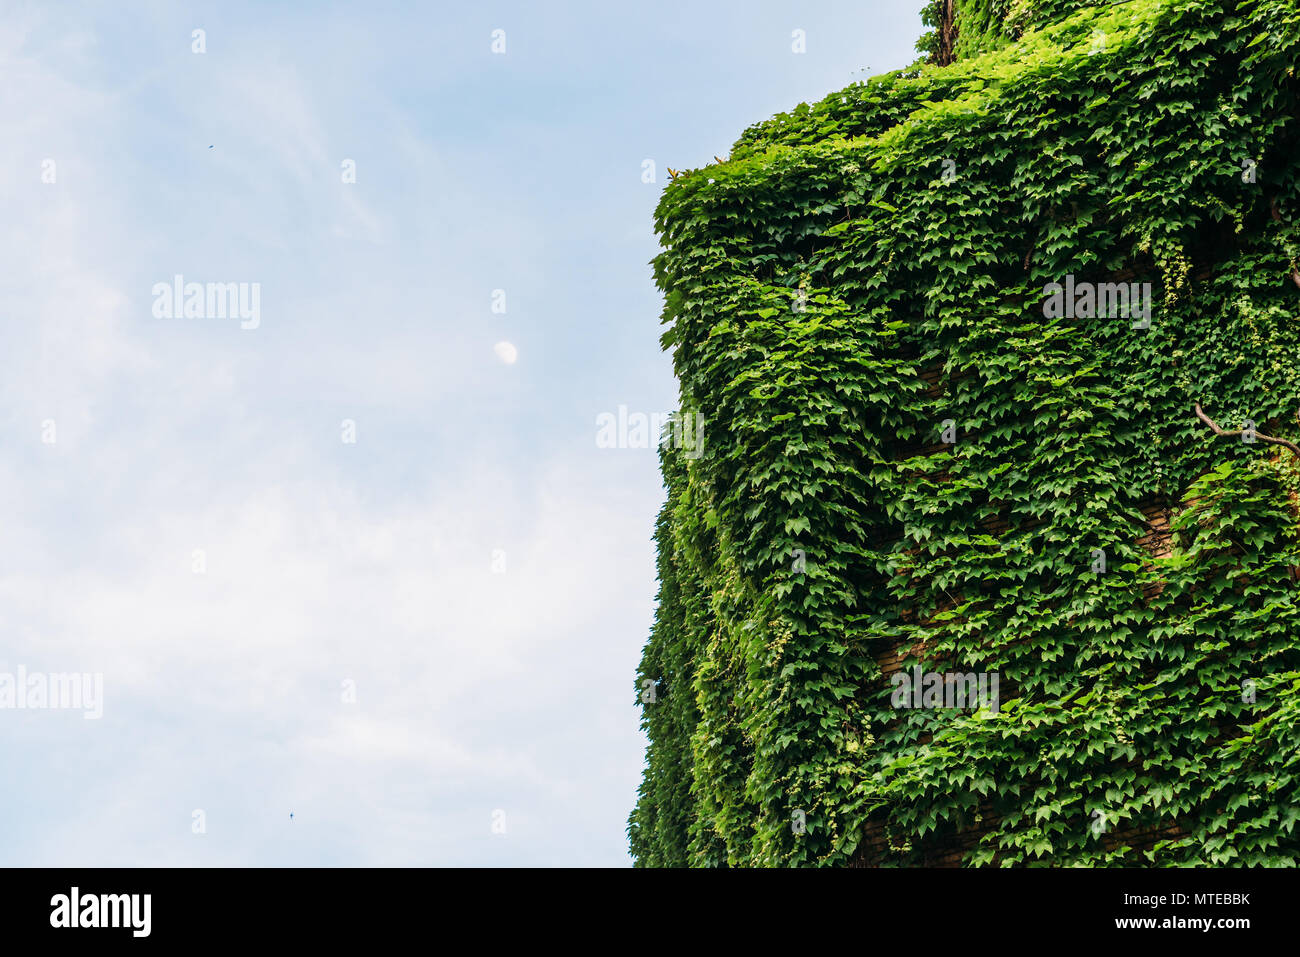 Villa italiana a Milano coperto in belle foglie verdi in primavera, con spazio copia contro il cielo blu Foto Stock